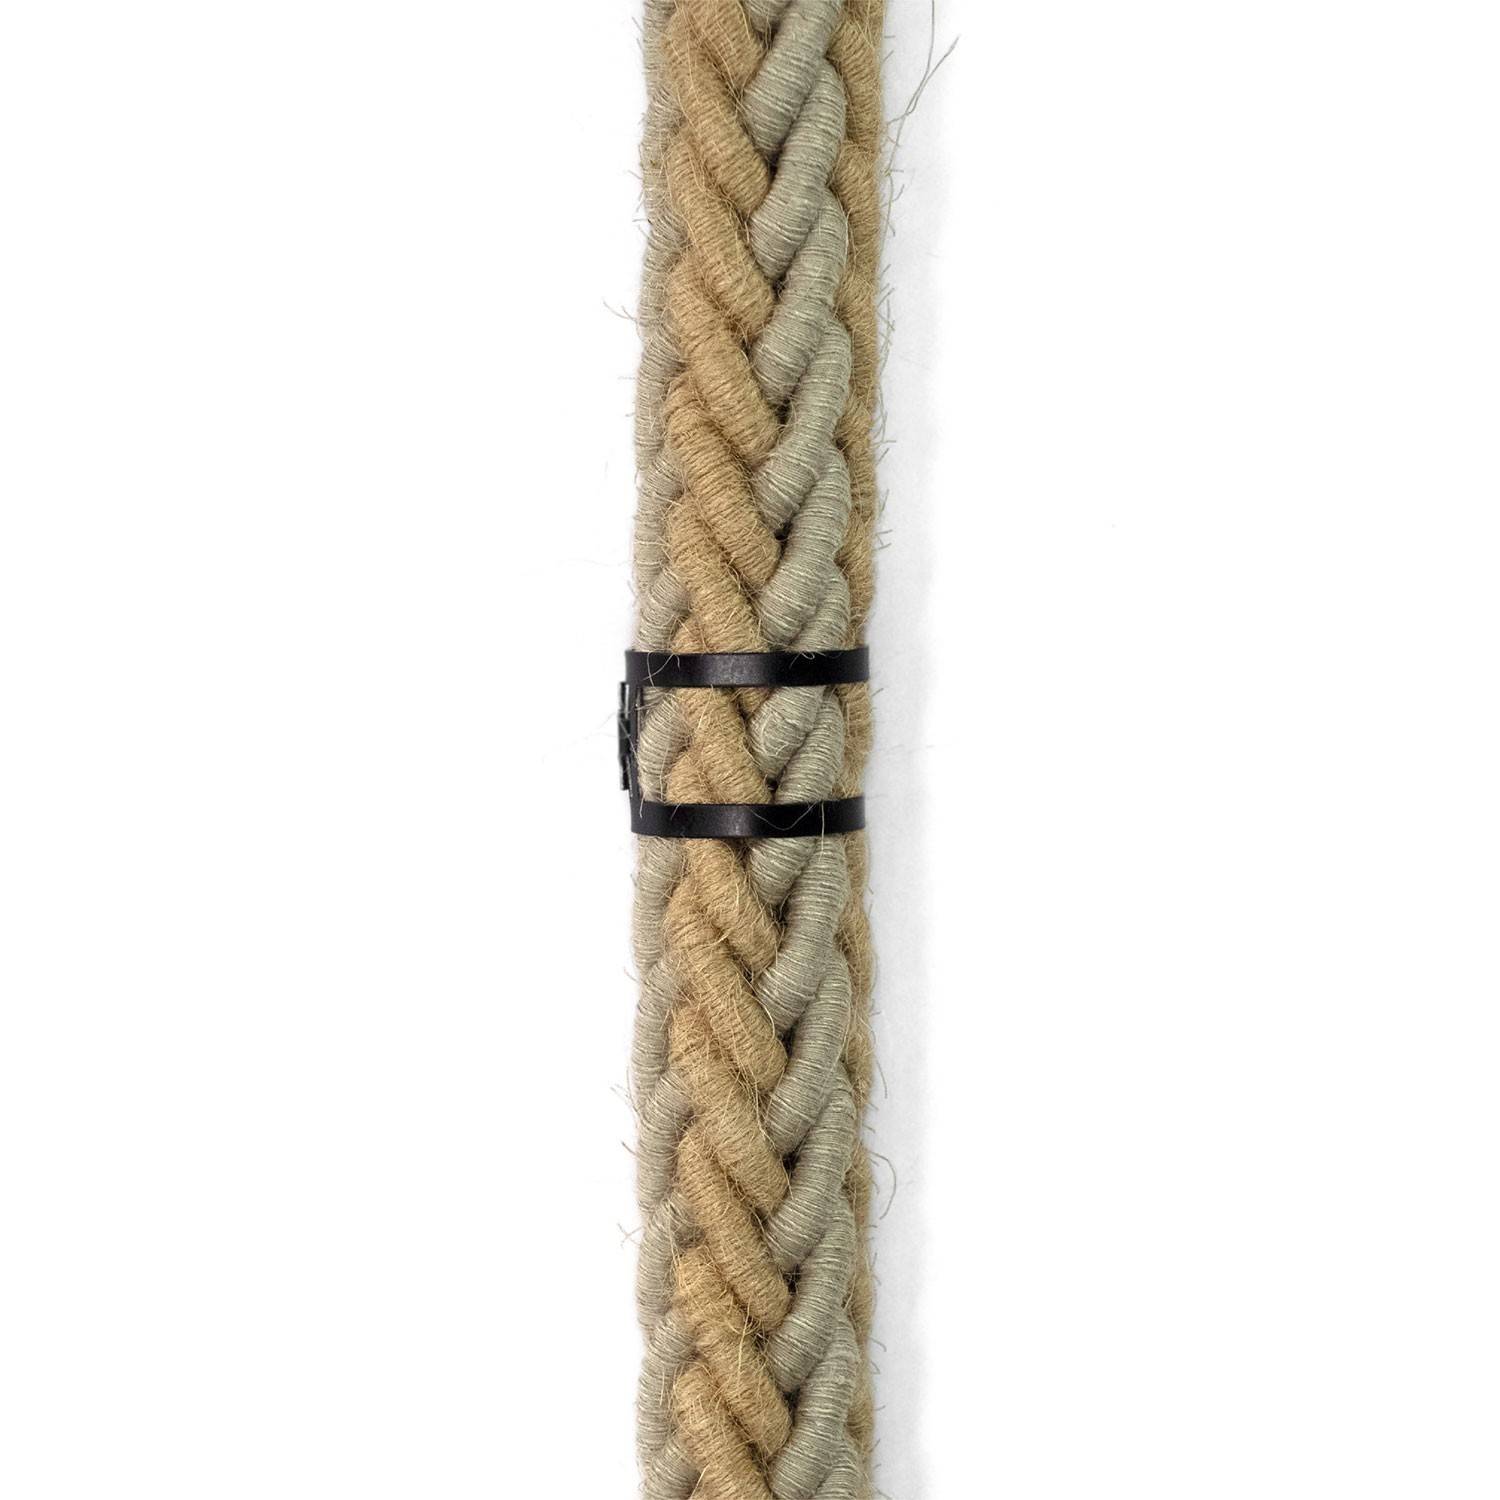 Mola de gravata em metal para cordão elétrico com 24 mm de diâmetro 